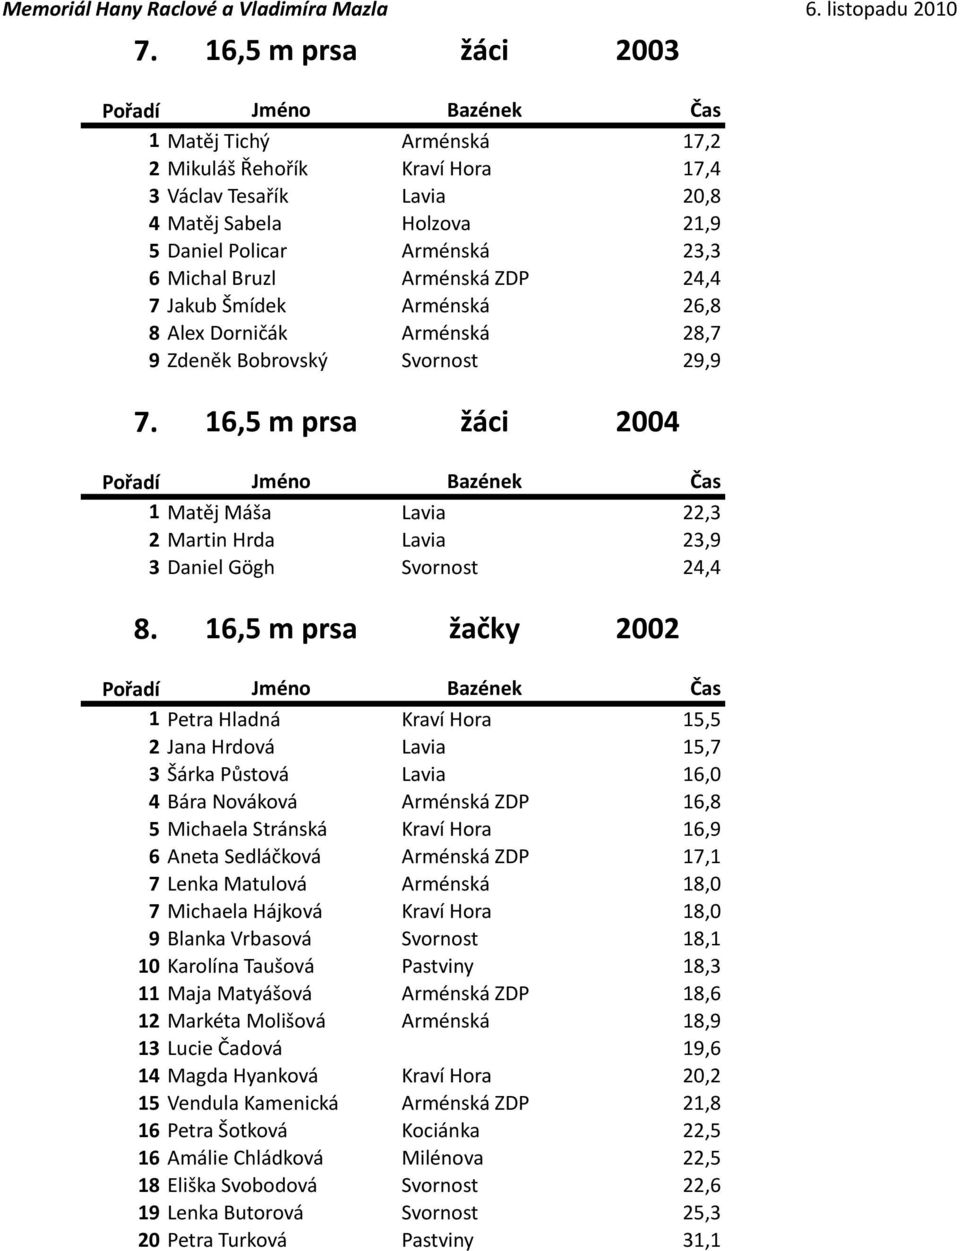 16,5 m prsa žáci 2004 1 Matěj Máša Lavia 22,3 2 Martin Hrda Lavia 23,9 3 Daniel Gögh Svornost 24,4 8.